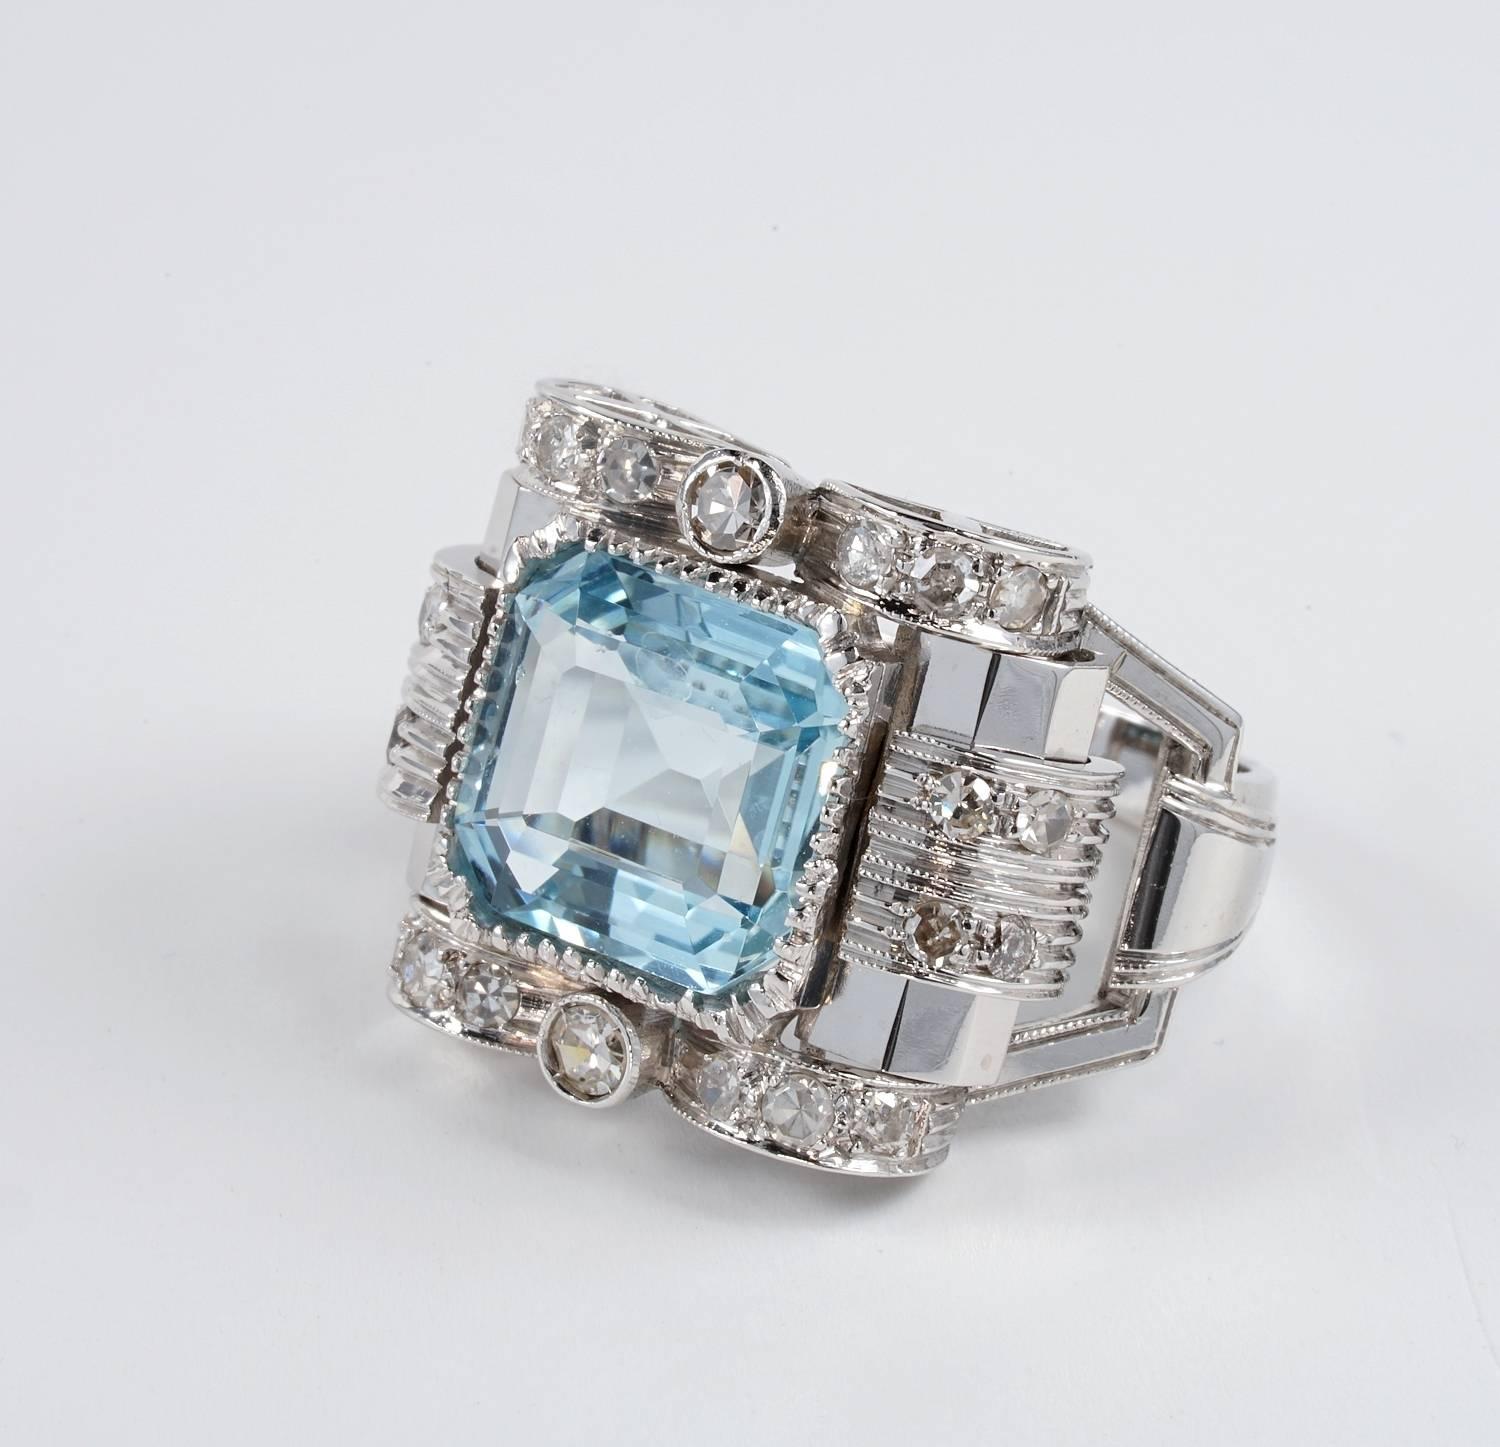 Emerald Cut Art Deco 5.20 Carat Aquamarine Diamond Ring